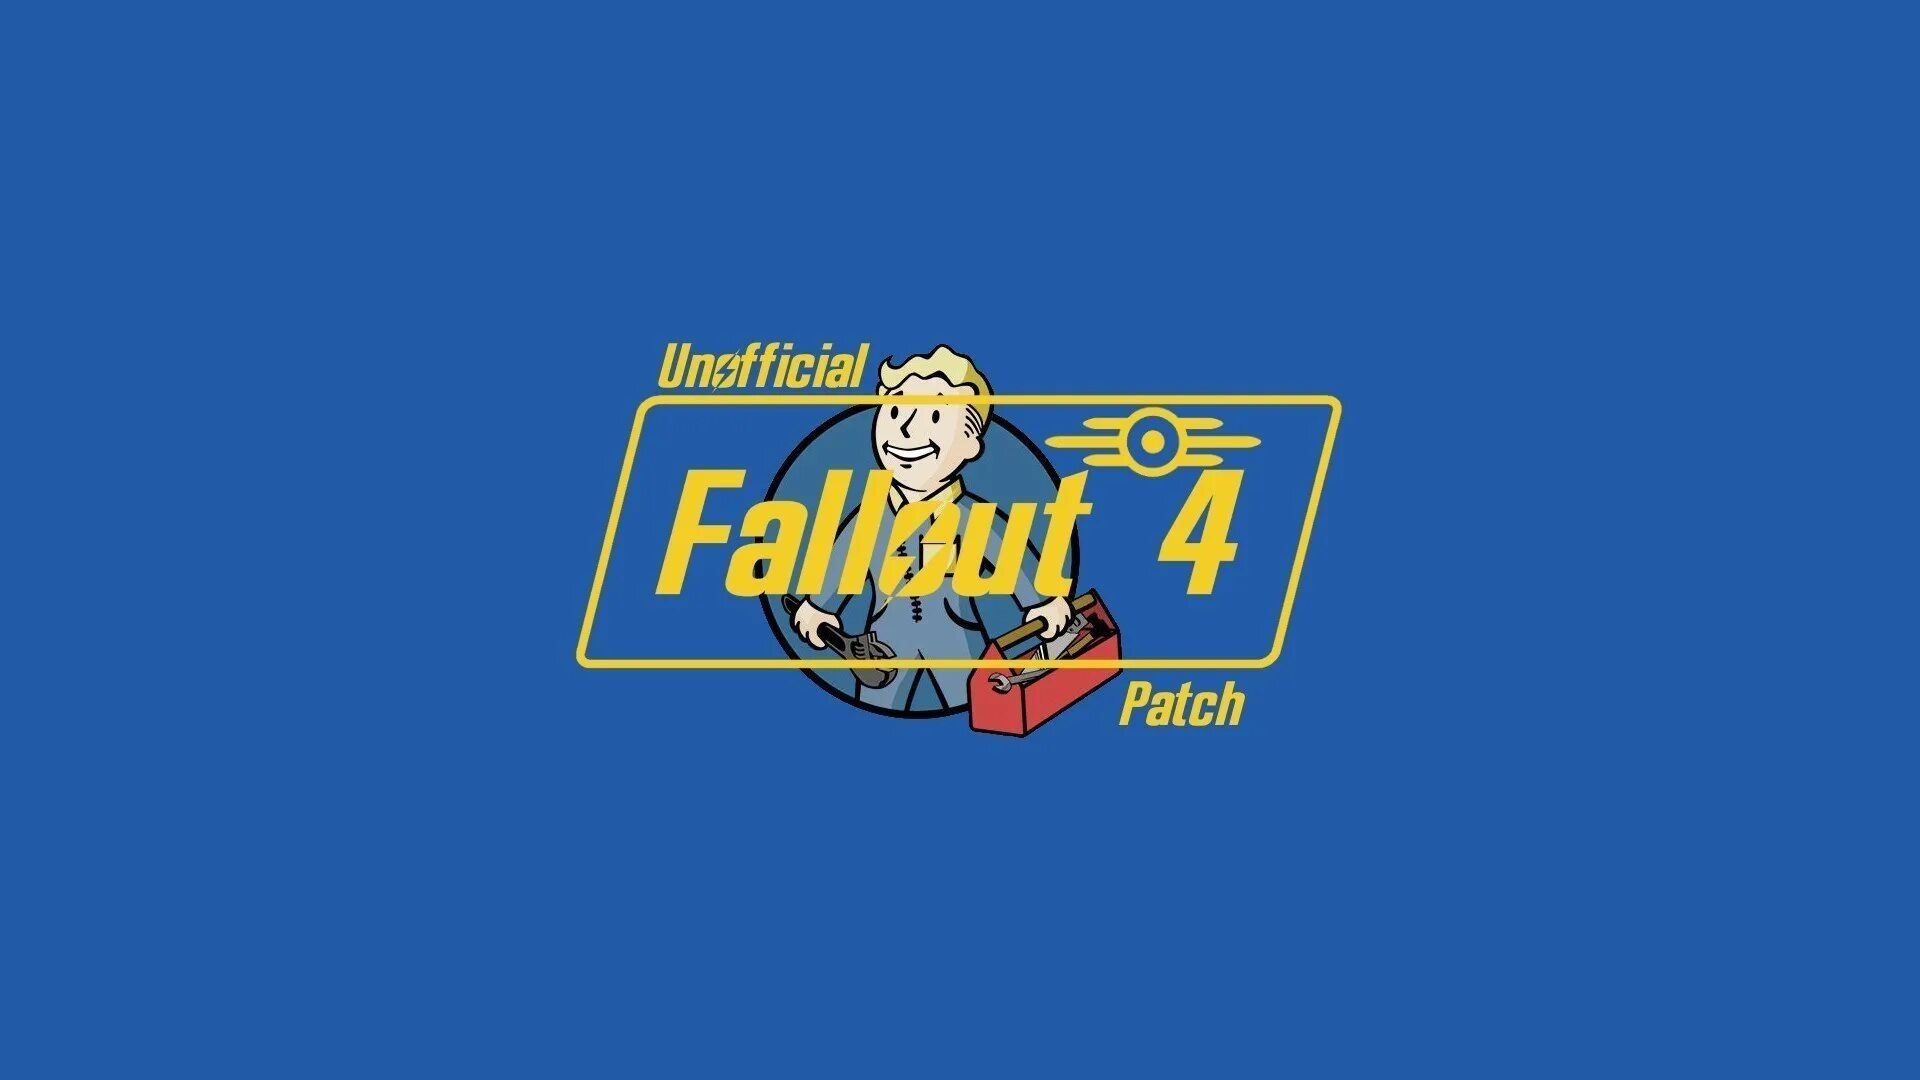 High resolution patch. Патч Fallout. Неофициальный патч для Fallout 4.